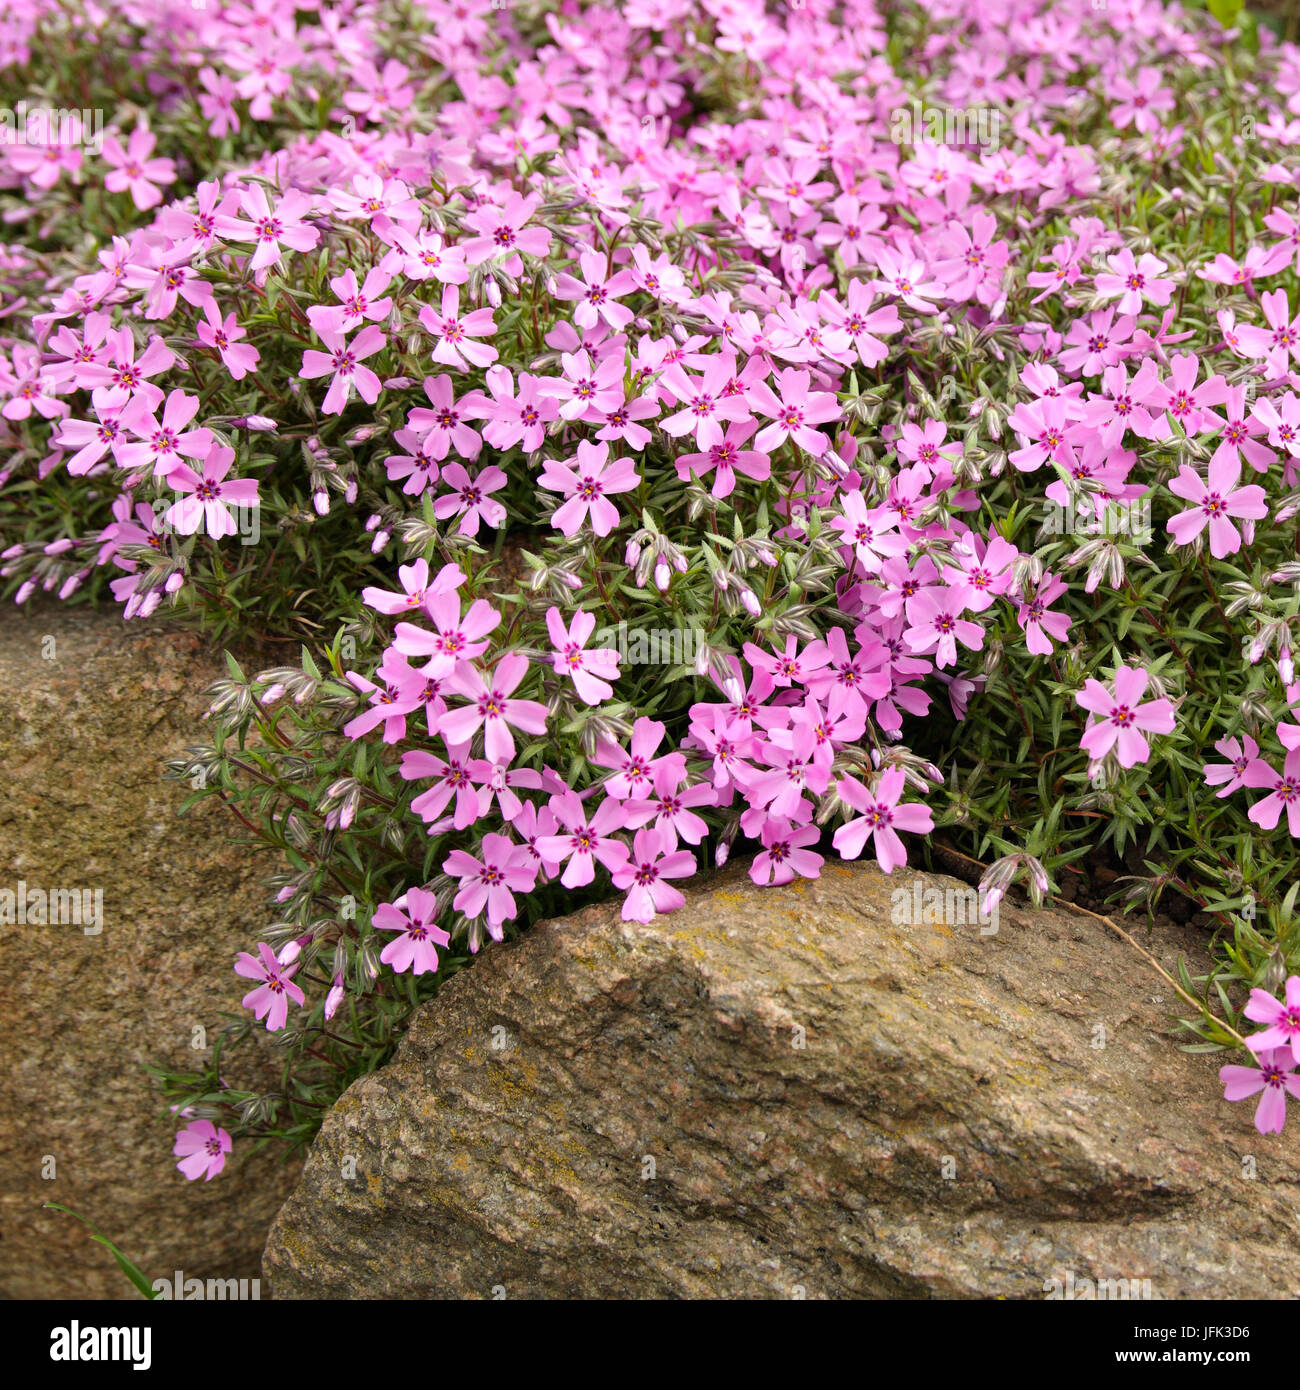 Pink creeping phlox as a decoration of yard Stock Photo